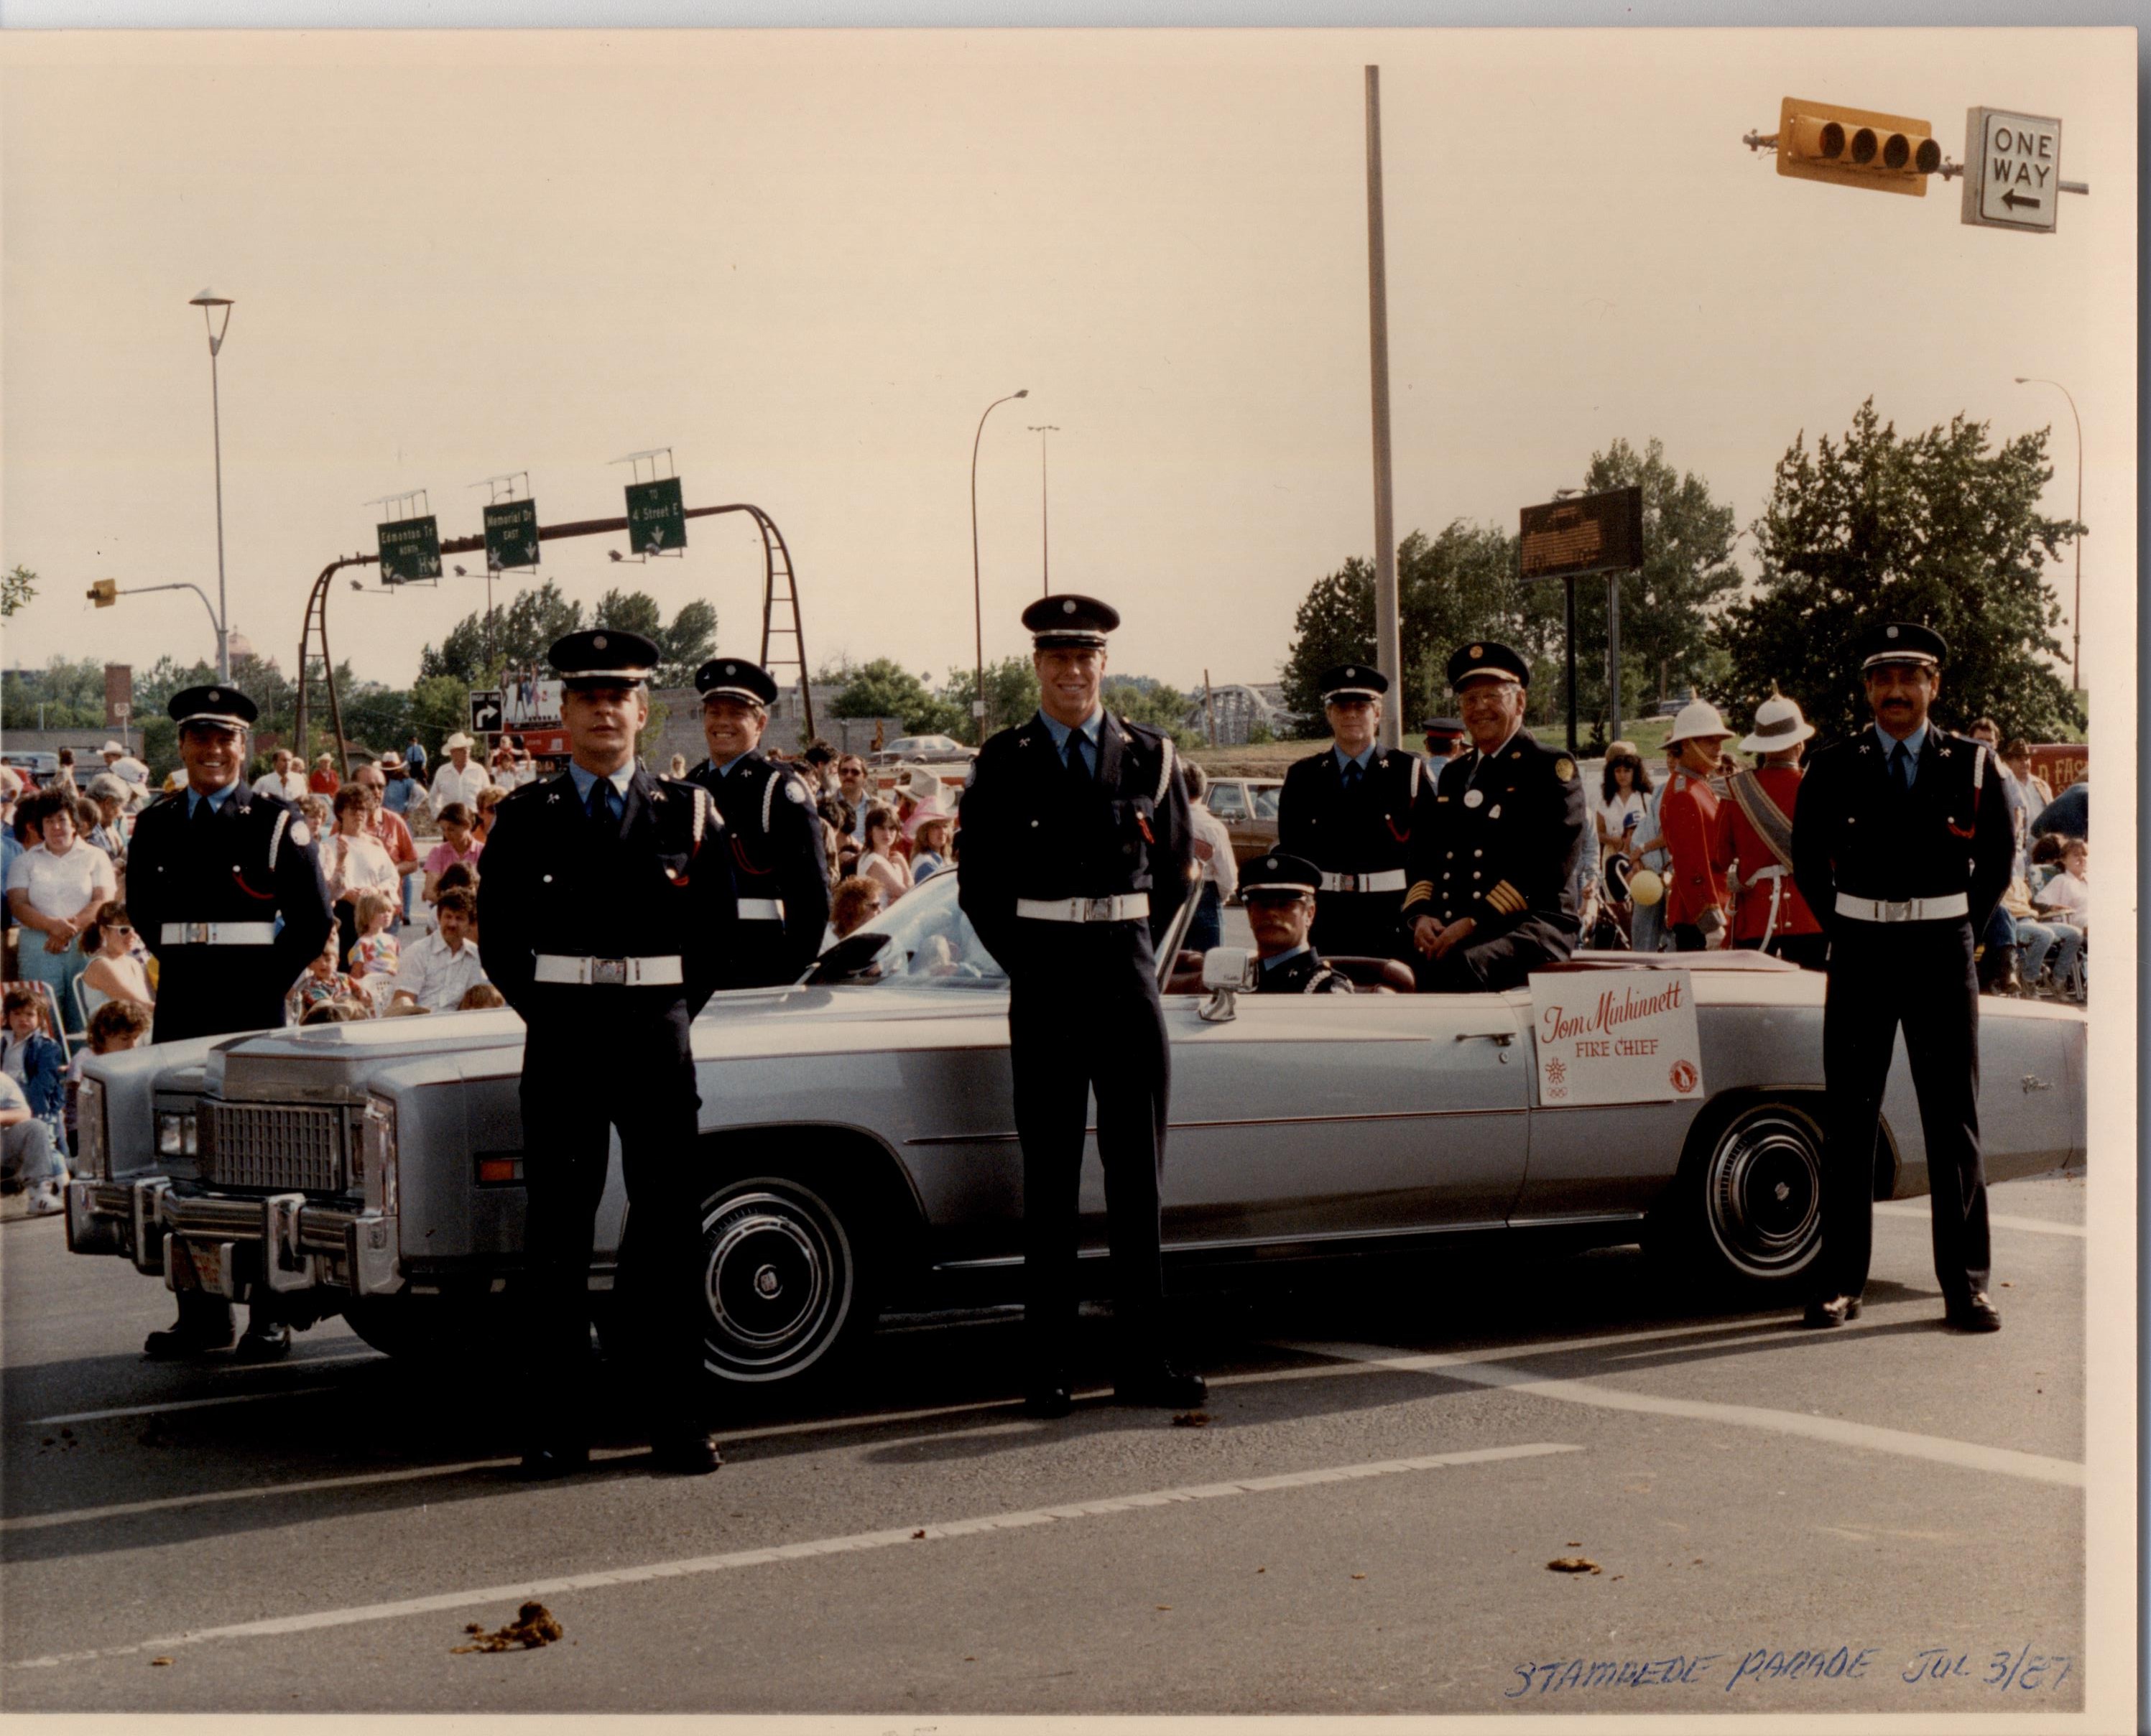 Six membres de la garde d’honneur, debout à côté d’une voiture décapotable dans laquelle le chef des pompiers est assis. On aperçoit des spectateurs en arrière-plan.